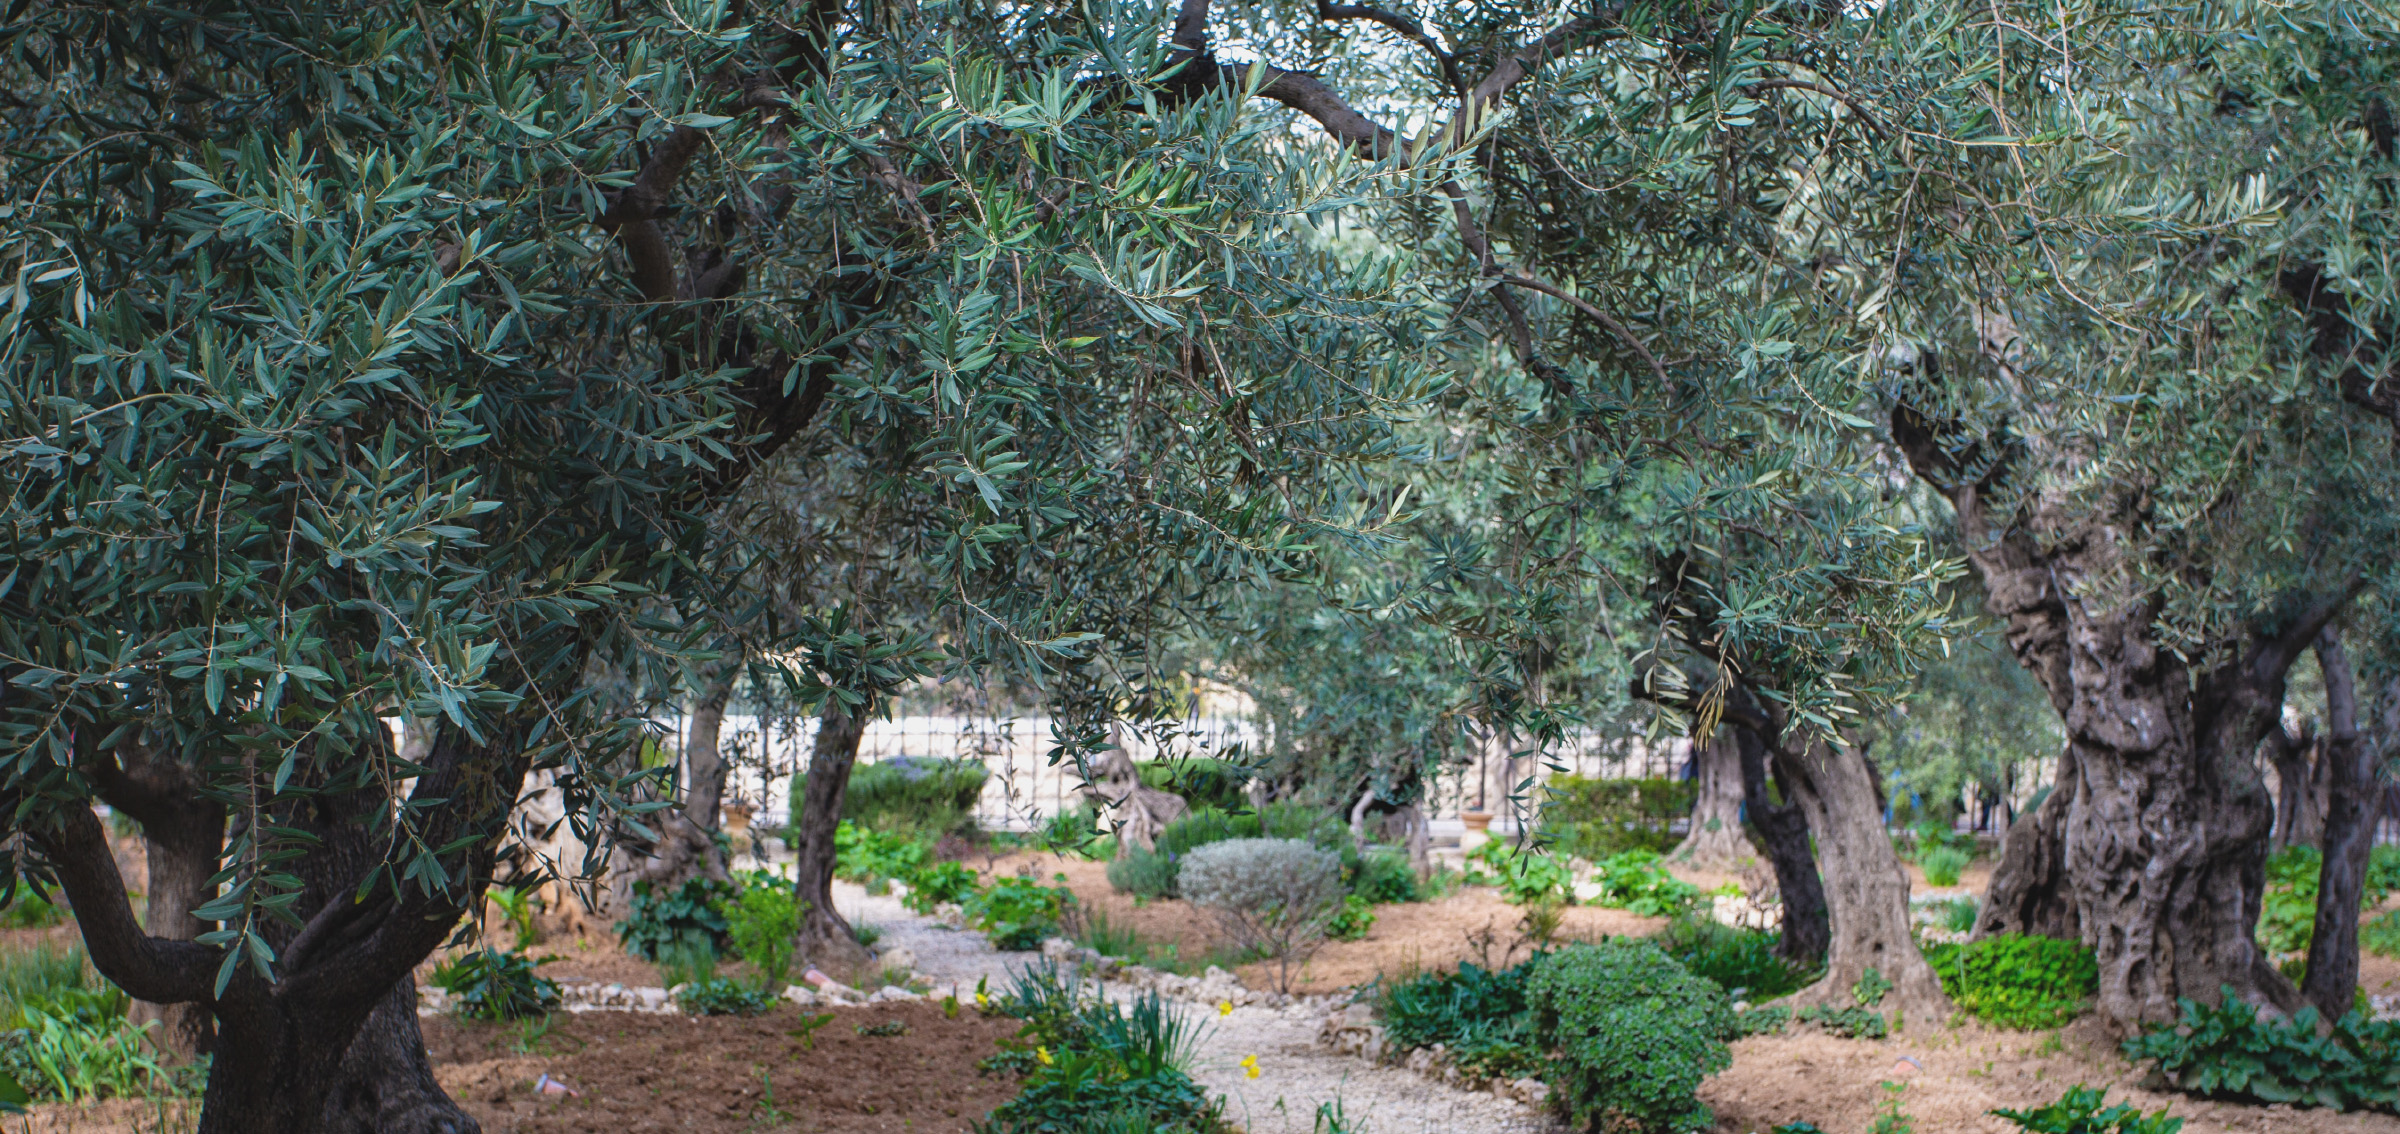 Trädgård med knotiga olivträd.